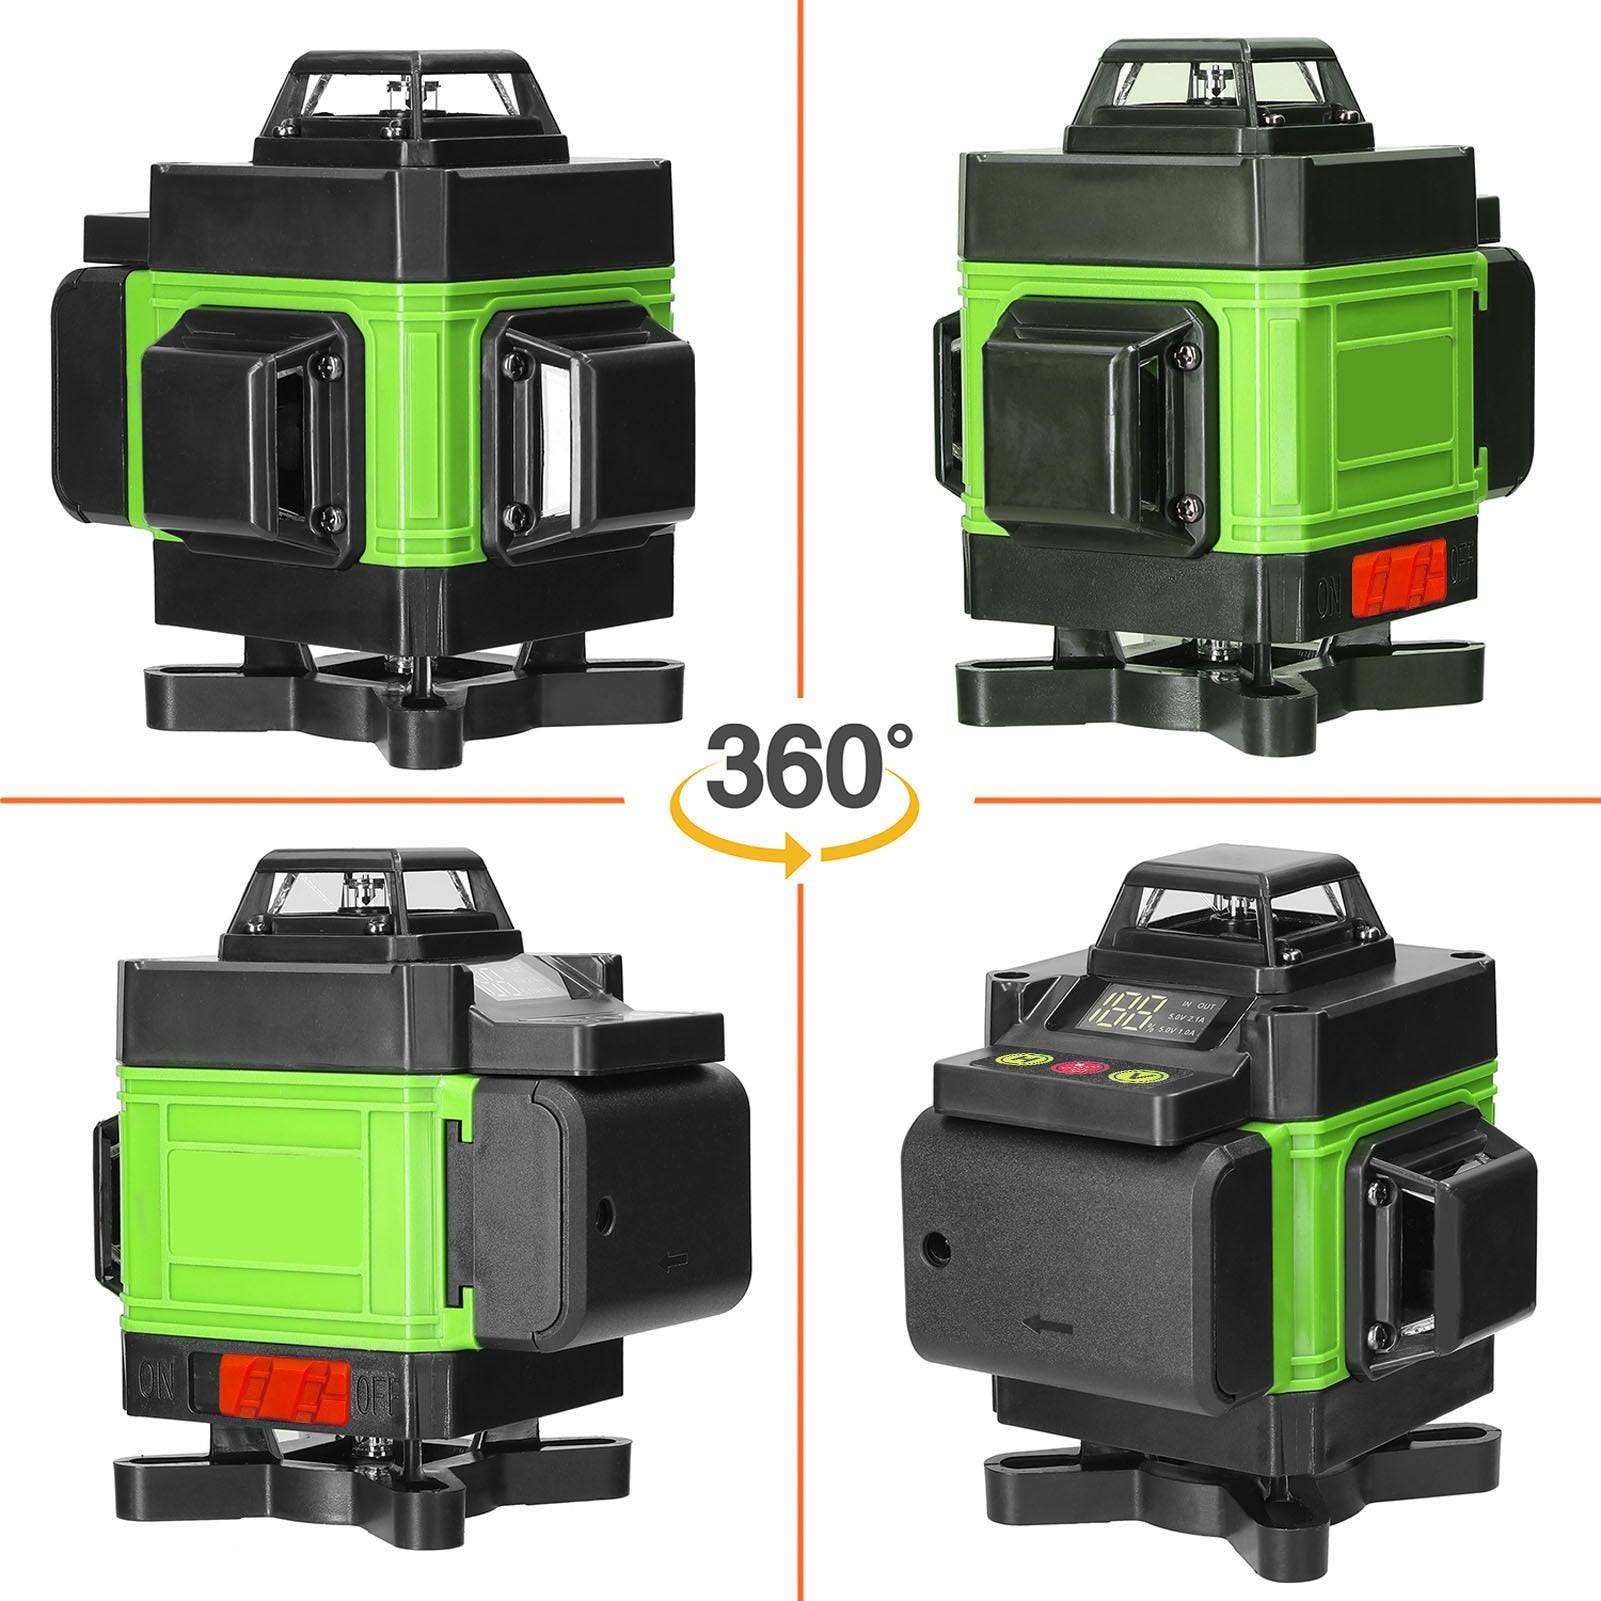 Multifuncional 4D 16 linhas 360 Laser Nível 3 ° Máquina de autonivelam –  J-one